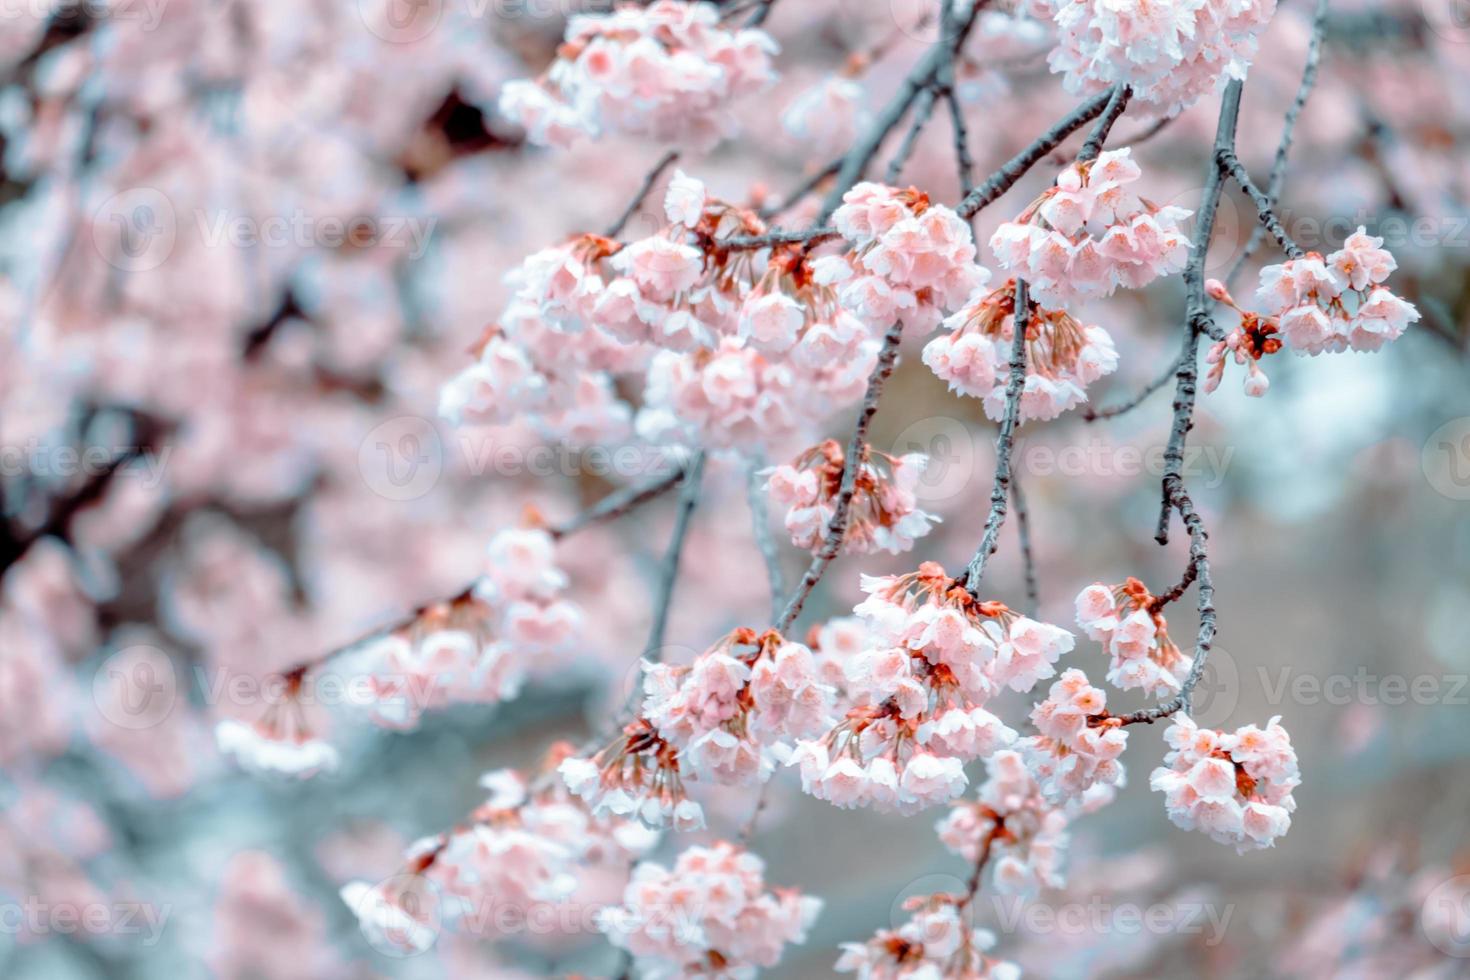 enfoque suave, flores de cerezo sakura floreciendo en un fondo de naturaleza borrosa un día de primavera en plena floración en Japón foto